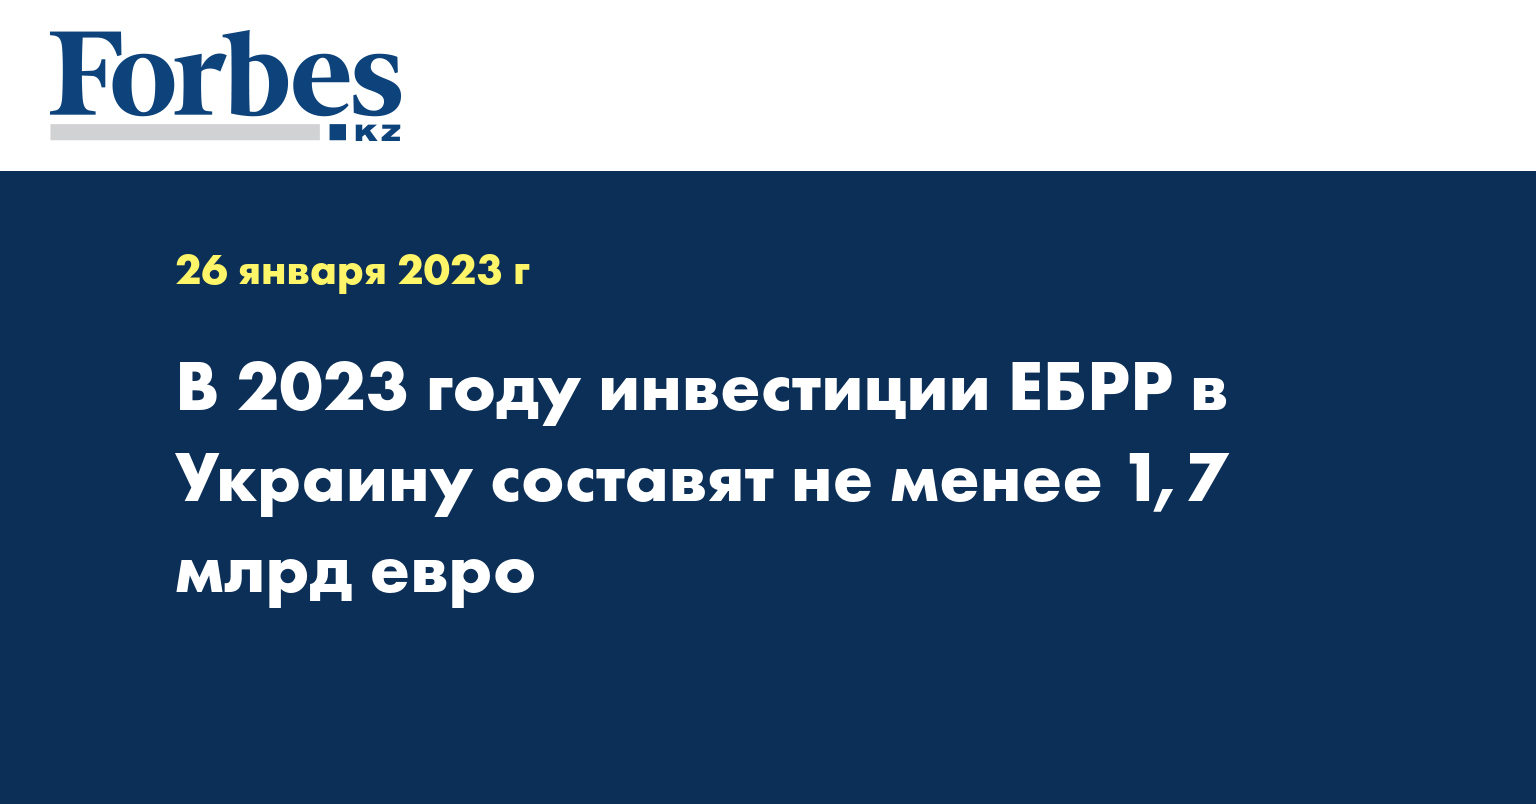 В 2023 году инвестиции ЕБРР в Украину составят не менее 1,7 млрд евро